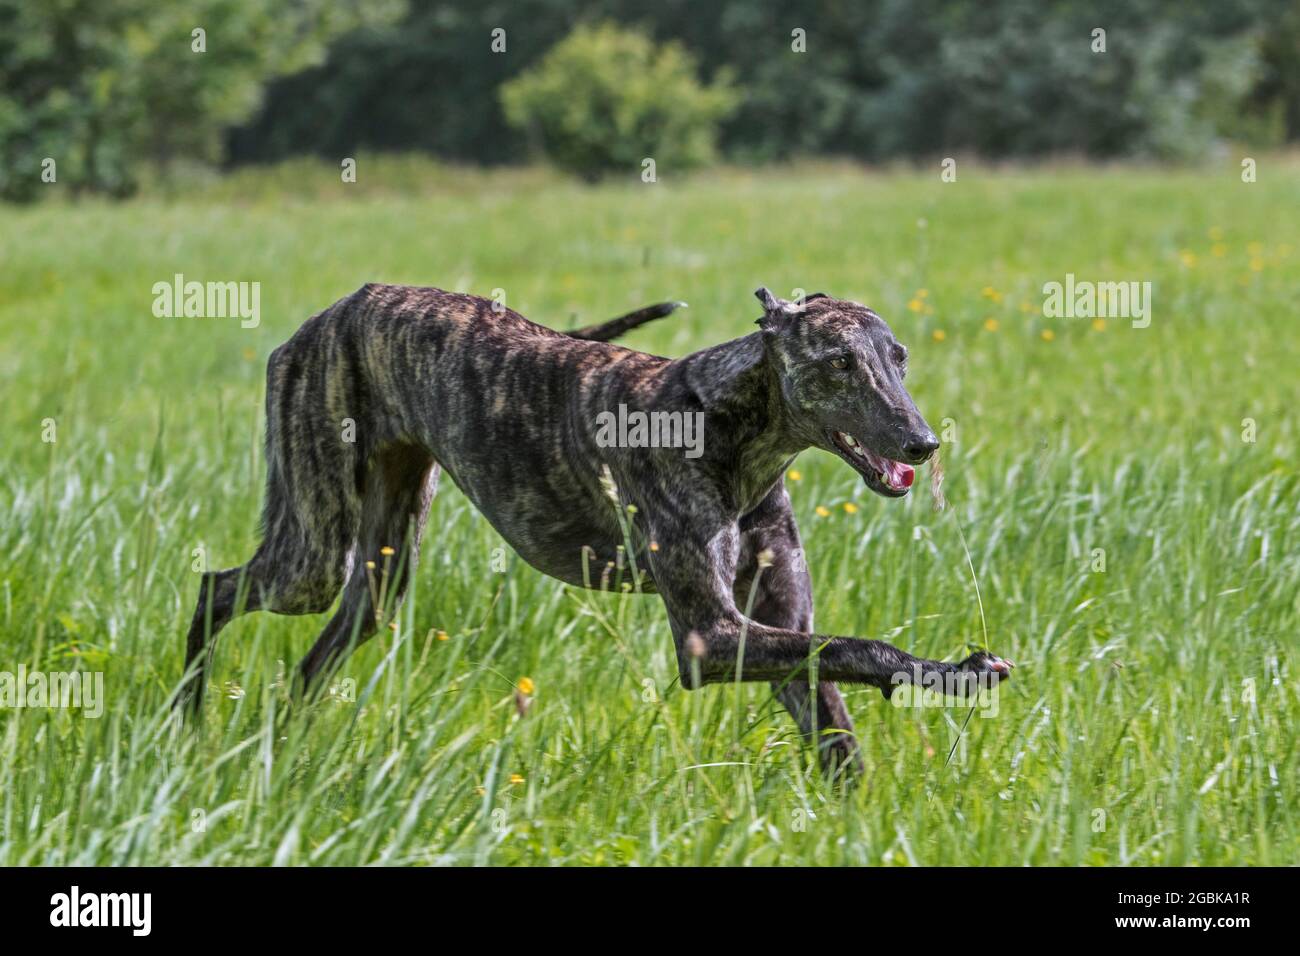 Gestromt Galgo Español / barcino Spanish galgo / atigrado Spanischer Windhund, Hunderasse der Windhunde, die im Feld laufen Stockfoto